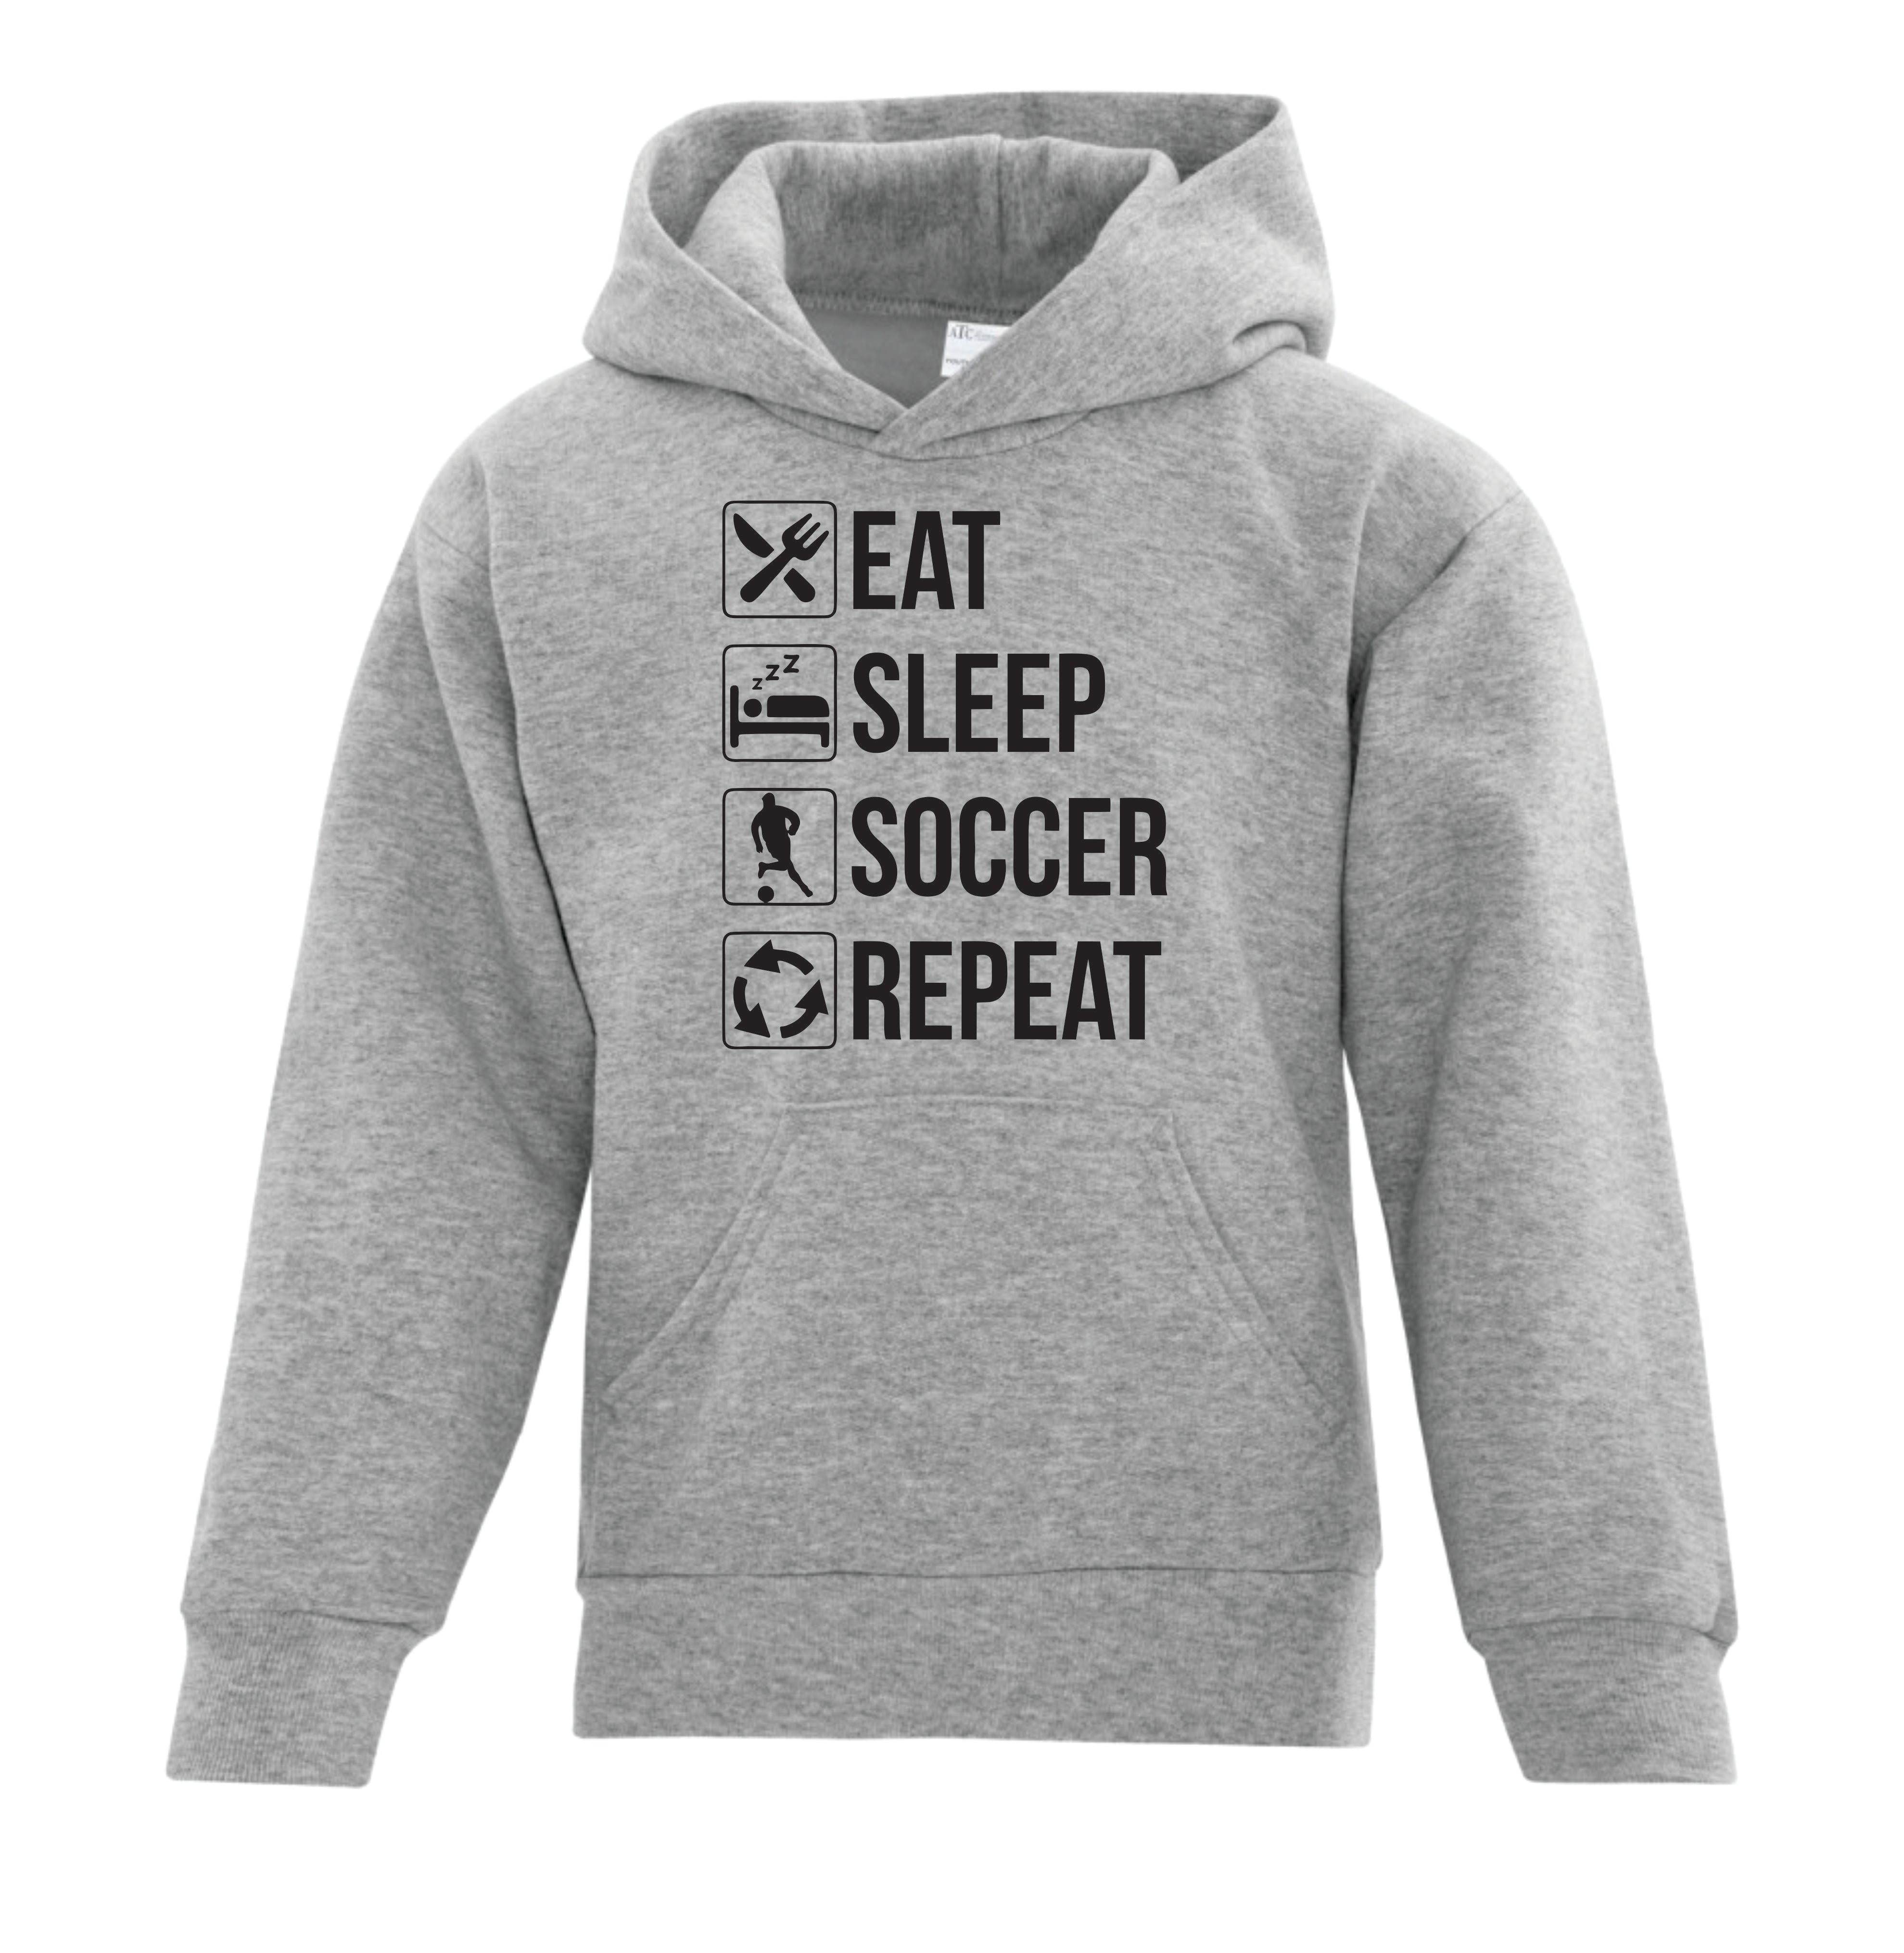 Eat Sleep Gymnastics' Hoodie (Junior) - KIT